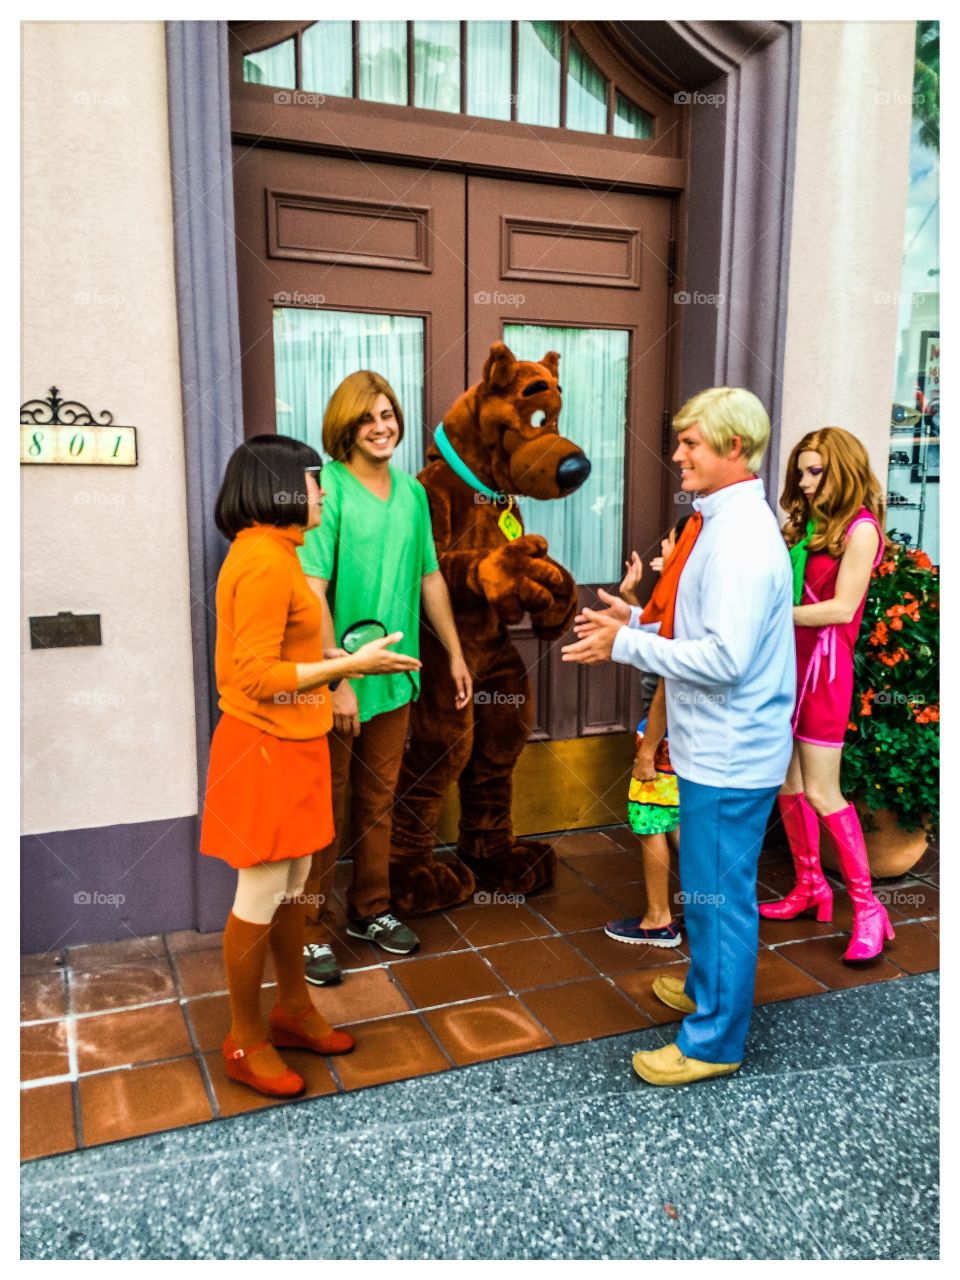 A turma do Scooby-Doo no Universal Park Orlando. Veja a turminha se engajando para tirar uma foto com um fã🤗